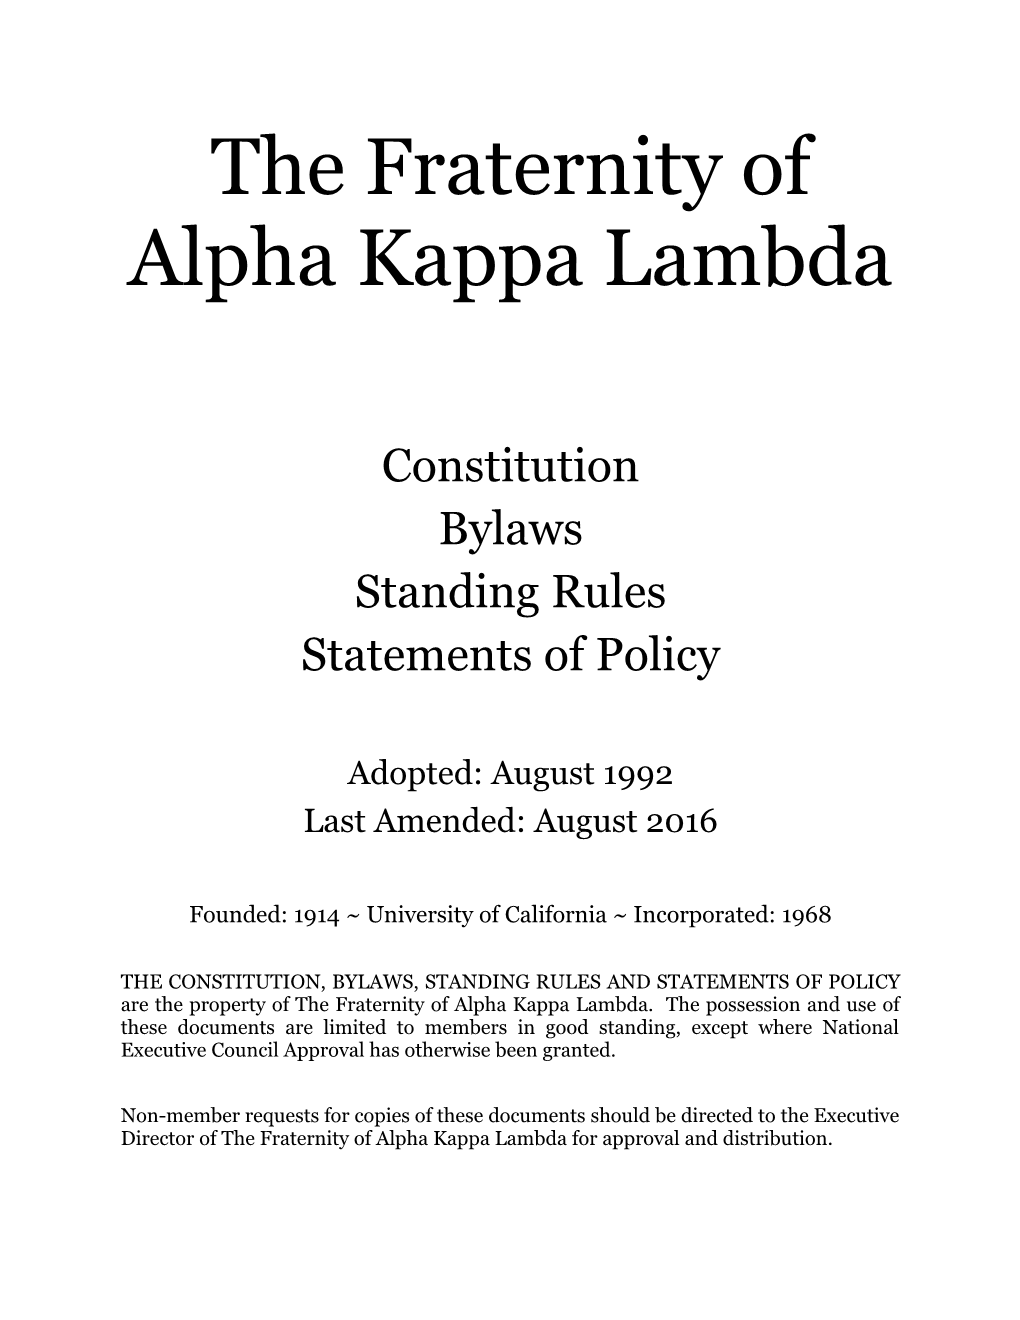 The Fraternity of Alpha Kappa Lambda